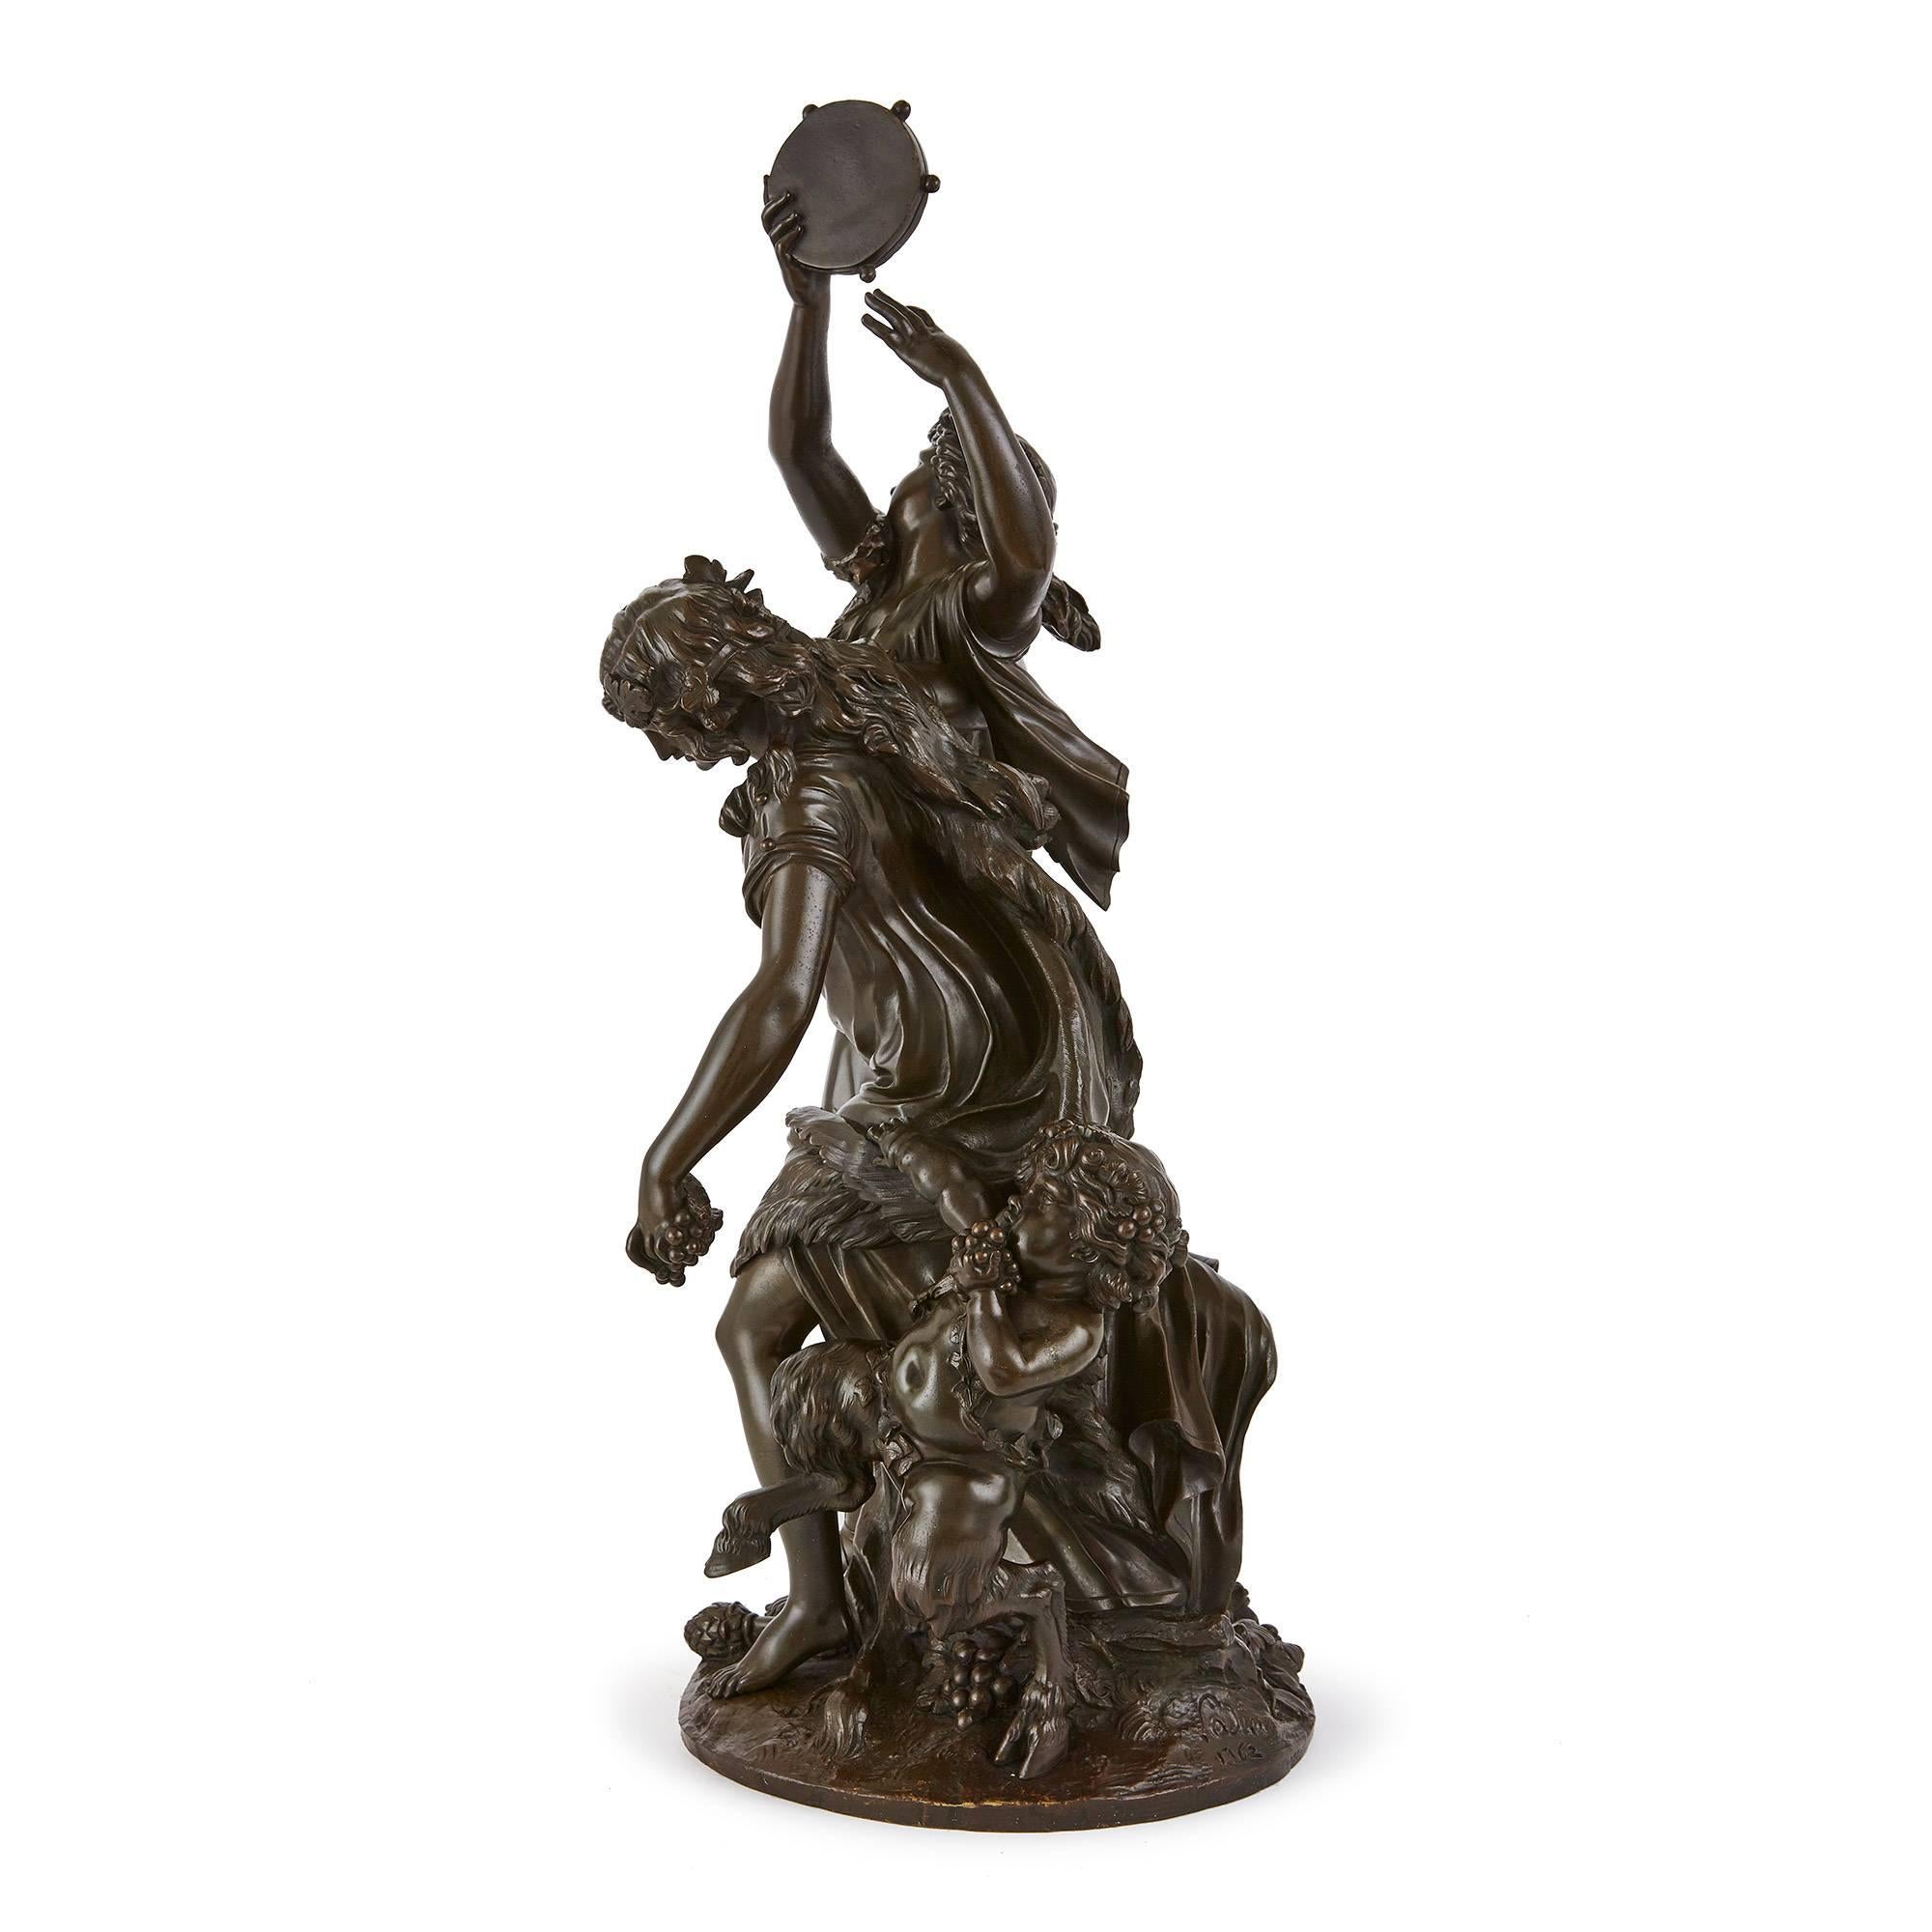 Diese dynamische antike patinierte Bronzeskulptur besteht aus zwei weiblichen Figuren und einem Satyr, die in einem Moment des wilden Tanzes und des bacchantischen Festes gefangen sind. Die Frauen sind in fließende Tuniken gekleidet und ihre Figuren